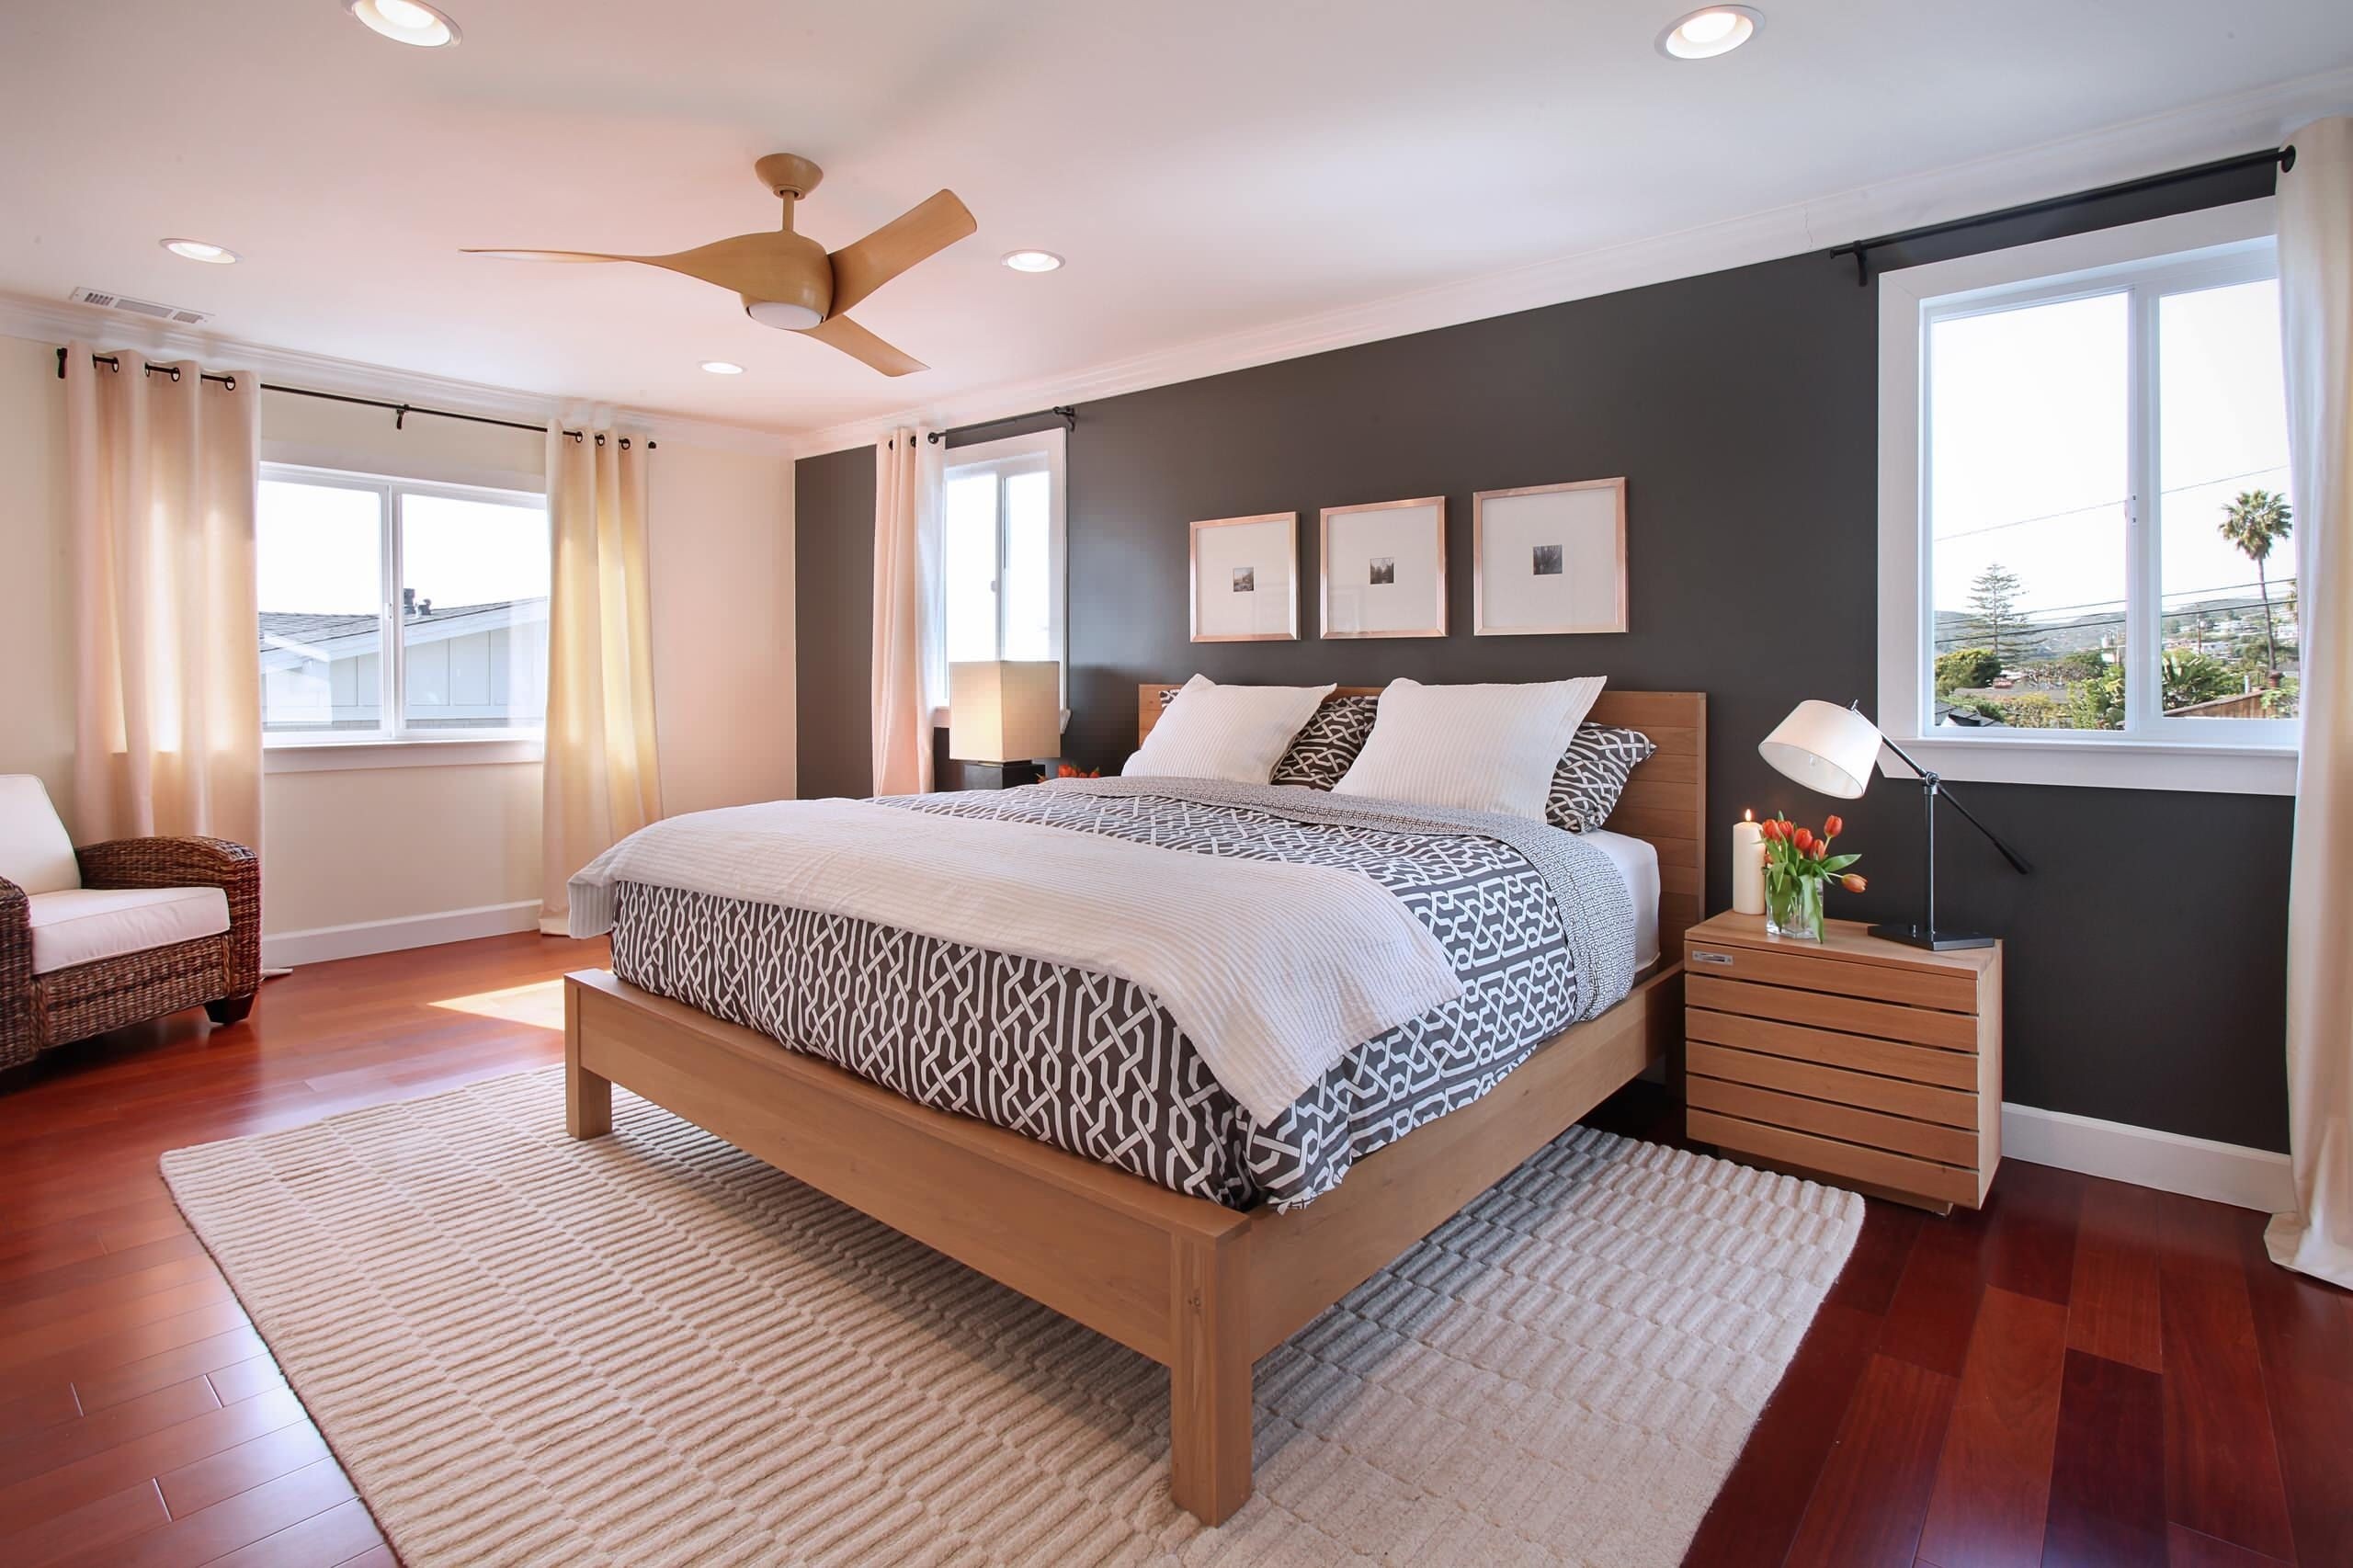 Oak bedroom furniture sets 2